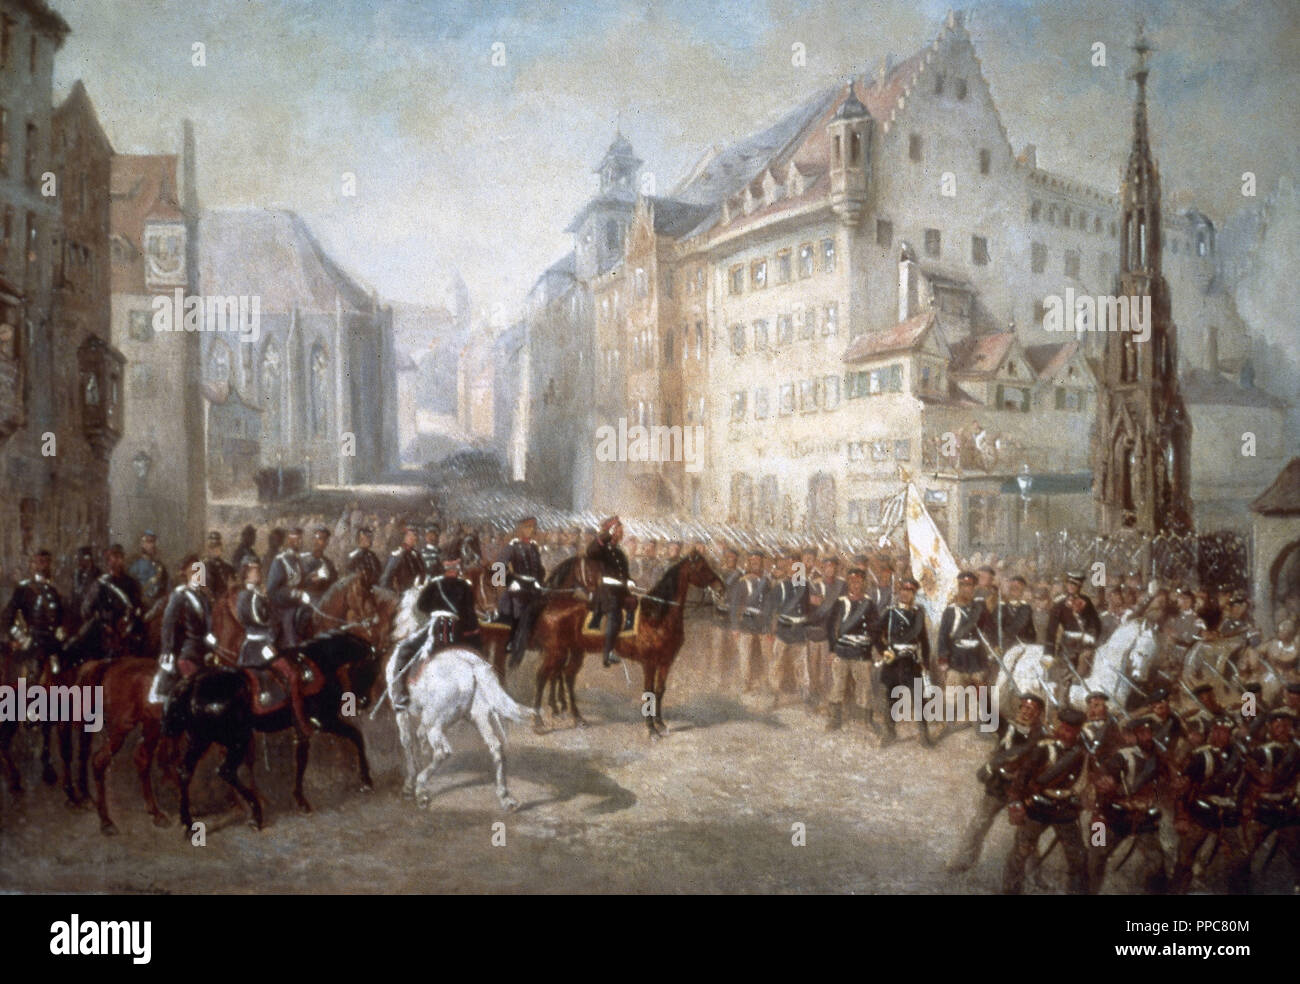 Guerre austro-prussienne. Défilé des troupes sur la place du marché à Nuremberg lors de l'occupation de la ville par les Prussiens en 1866. Peinture de Louis Braun (1836-1916). Banque D'Images